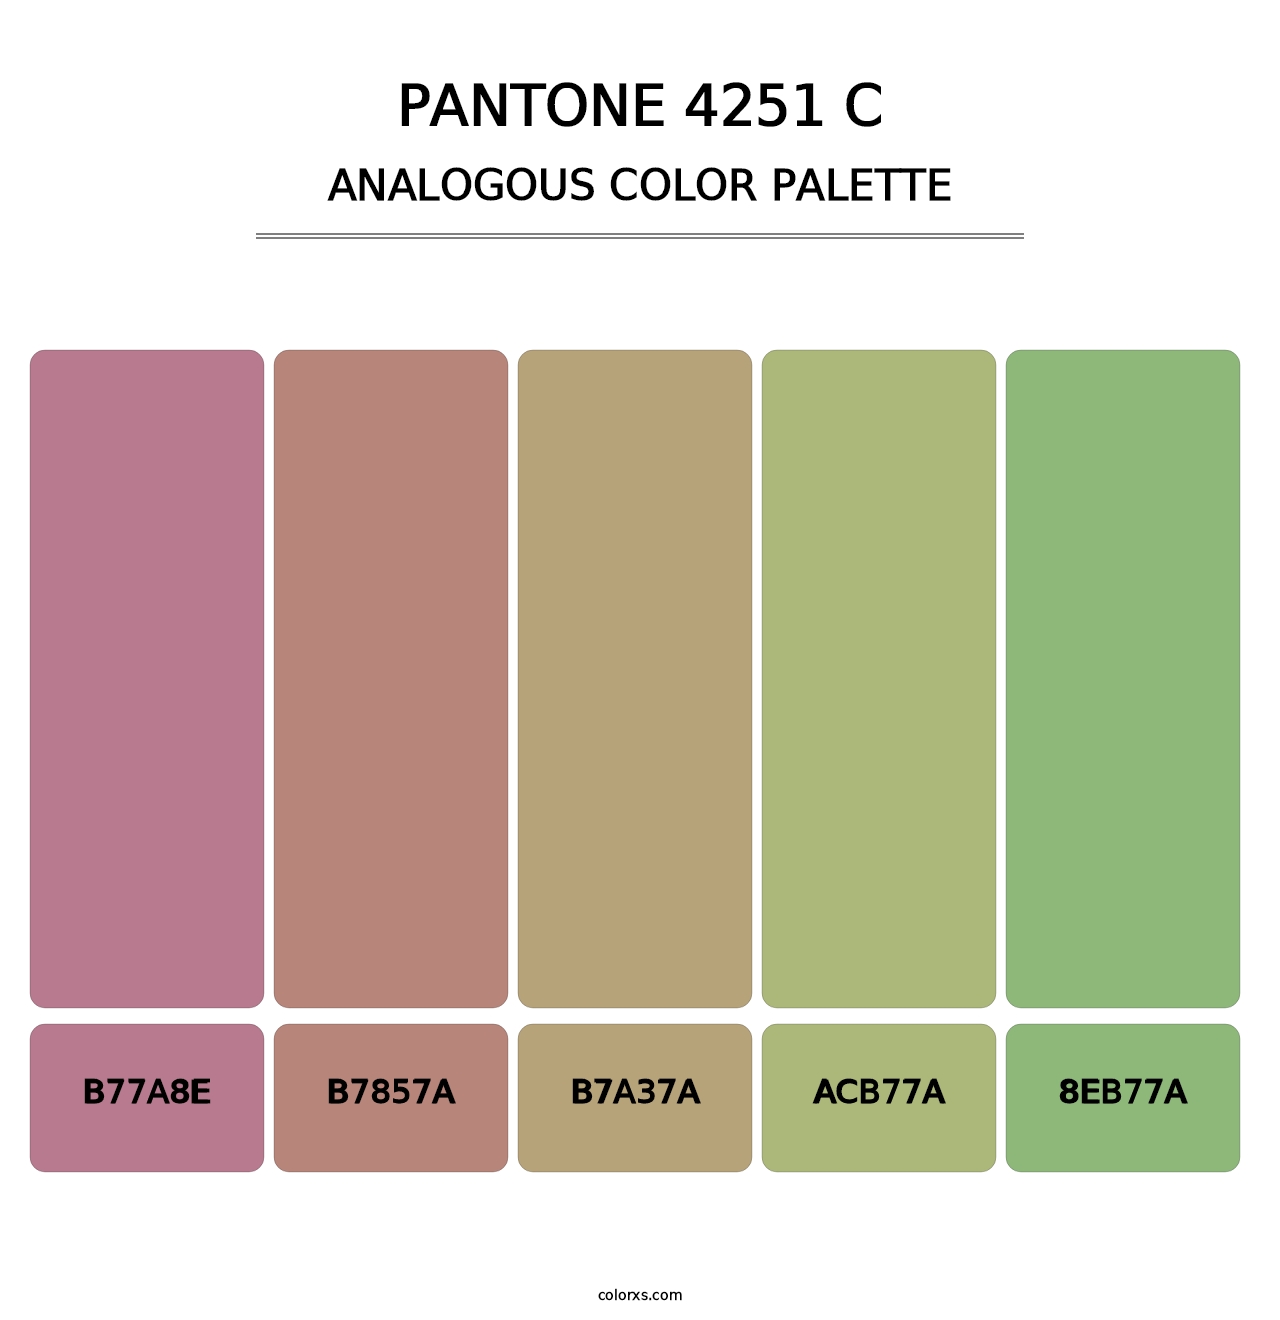 PANTONE 4251 C - Analogous Color Palette